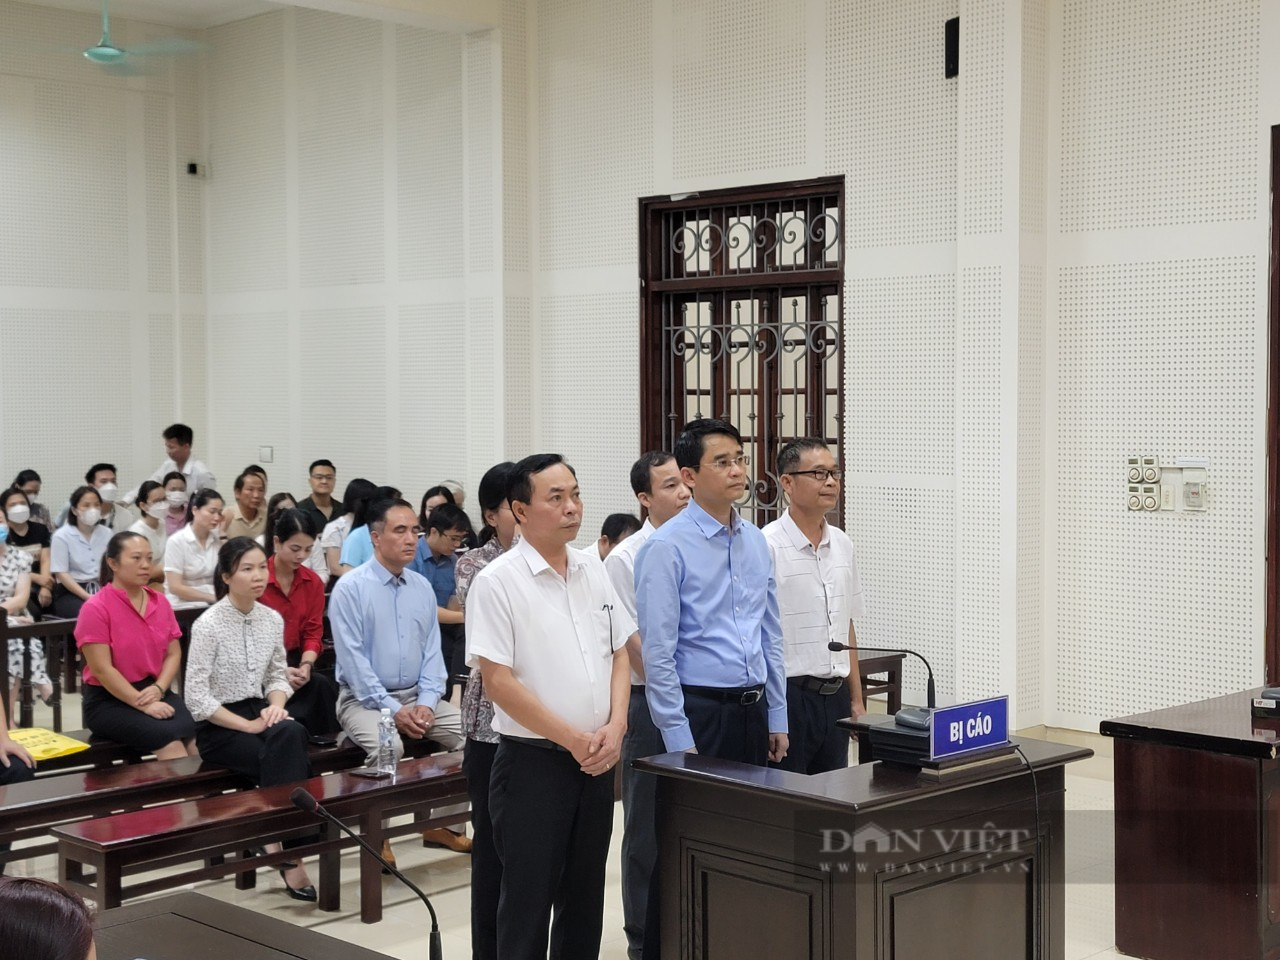 Cựu Phó Chủ tịch Quảng Ninh Phạm Văn Thành nhận 3 năm tù treo vì liên quan đến Công ty Việt Á - Ảnh 1.